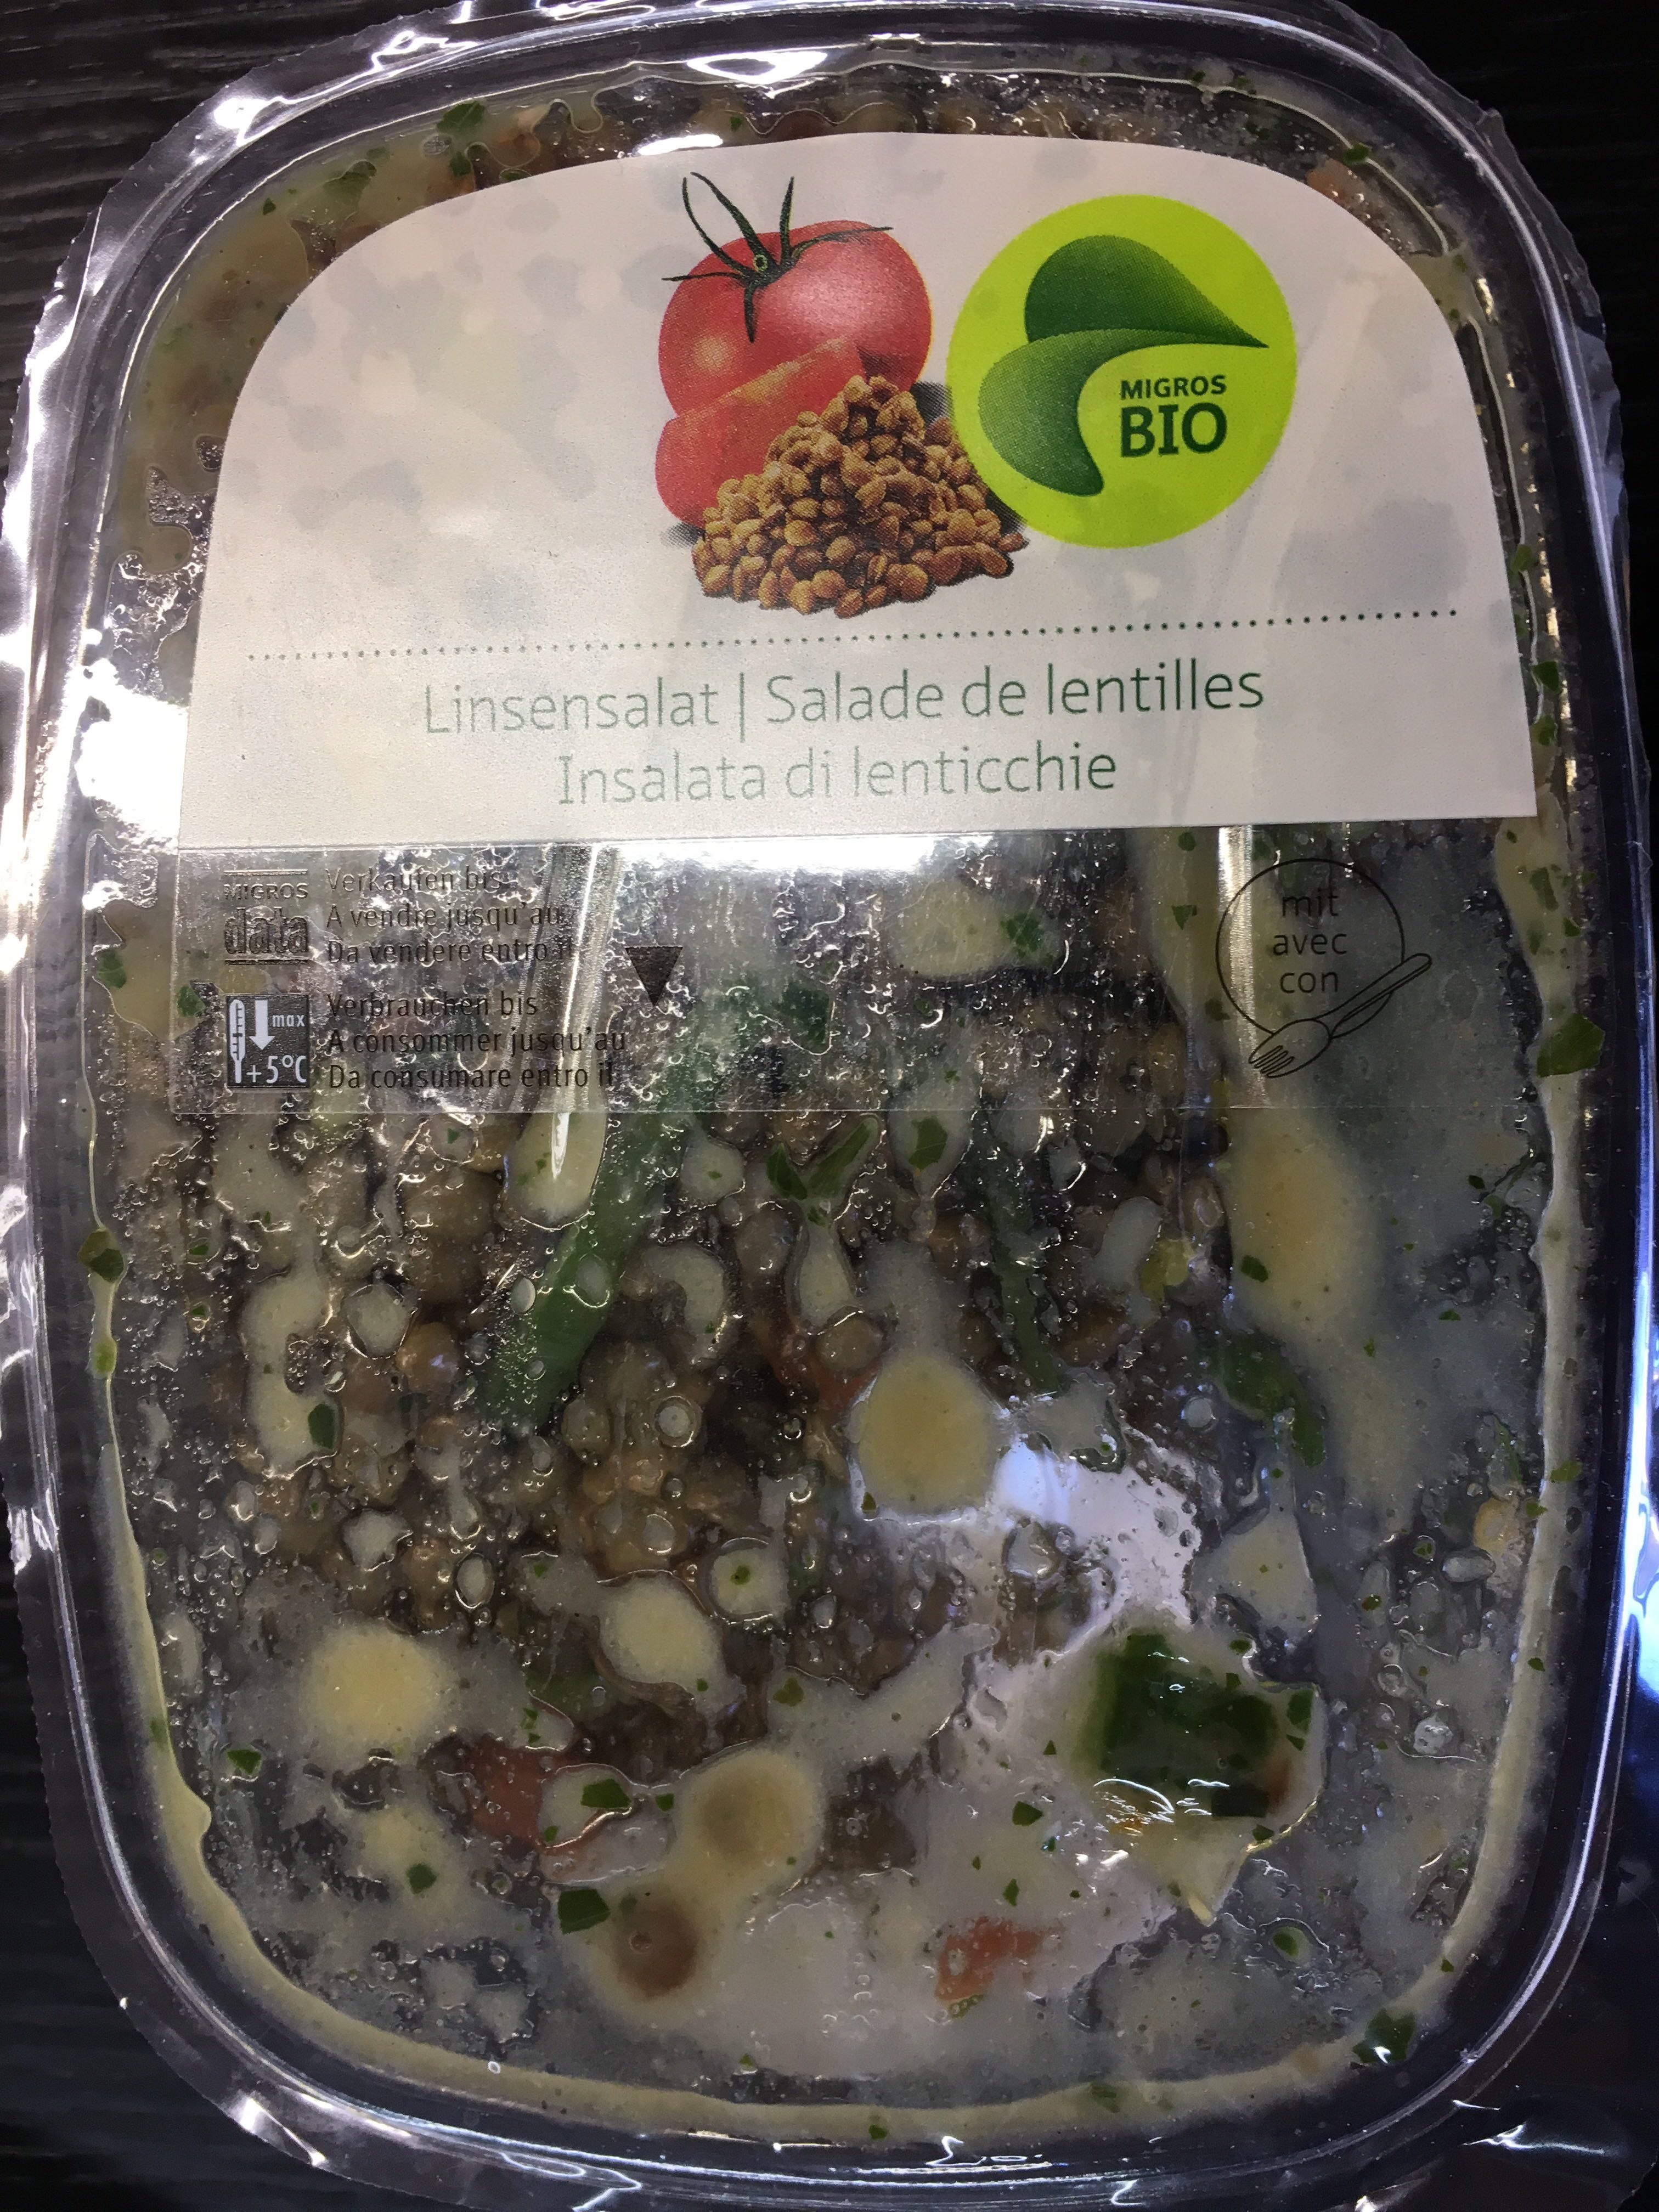 Salade de lentilles bio - Prodotto - fr